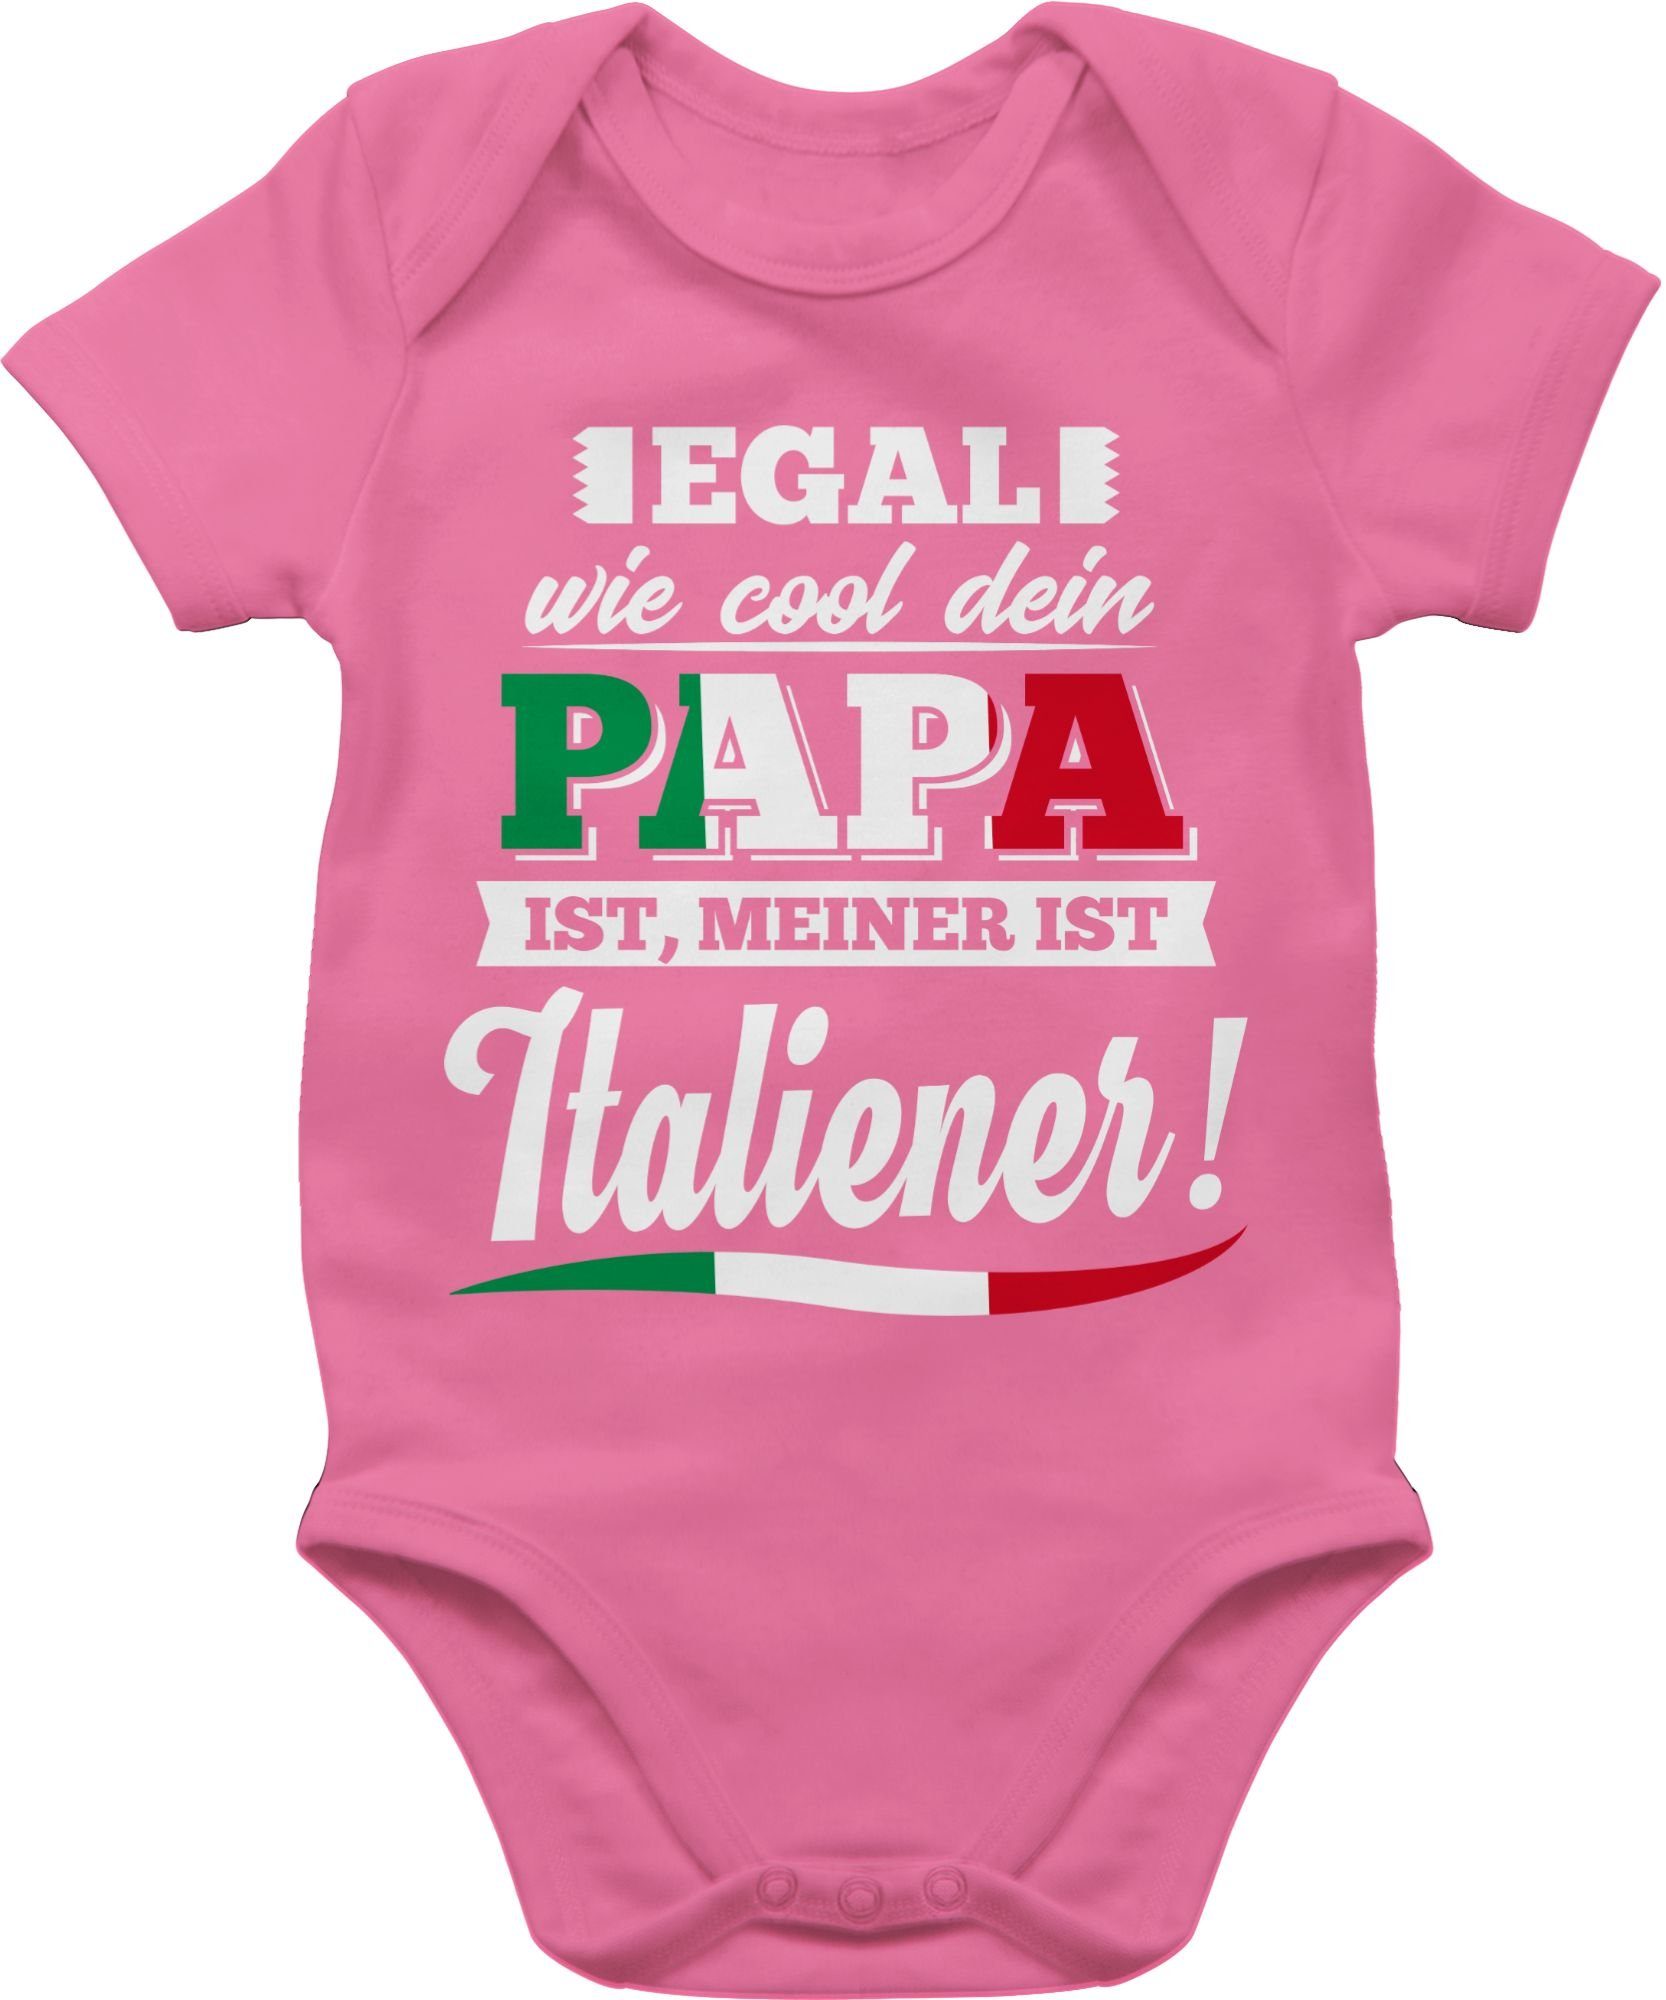 Shirtracer Shirtbody Egal wie Cool dein Papa meiner ist Italiener Sprüche Baby 2 Pink